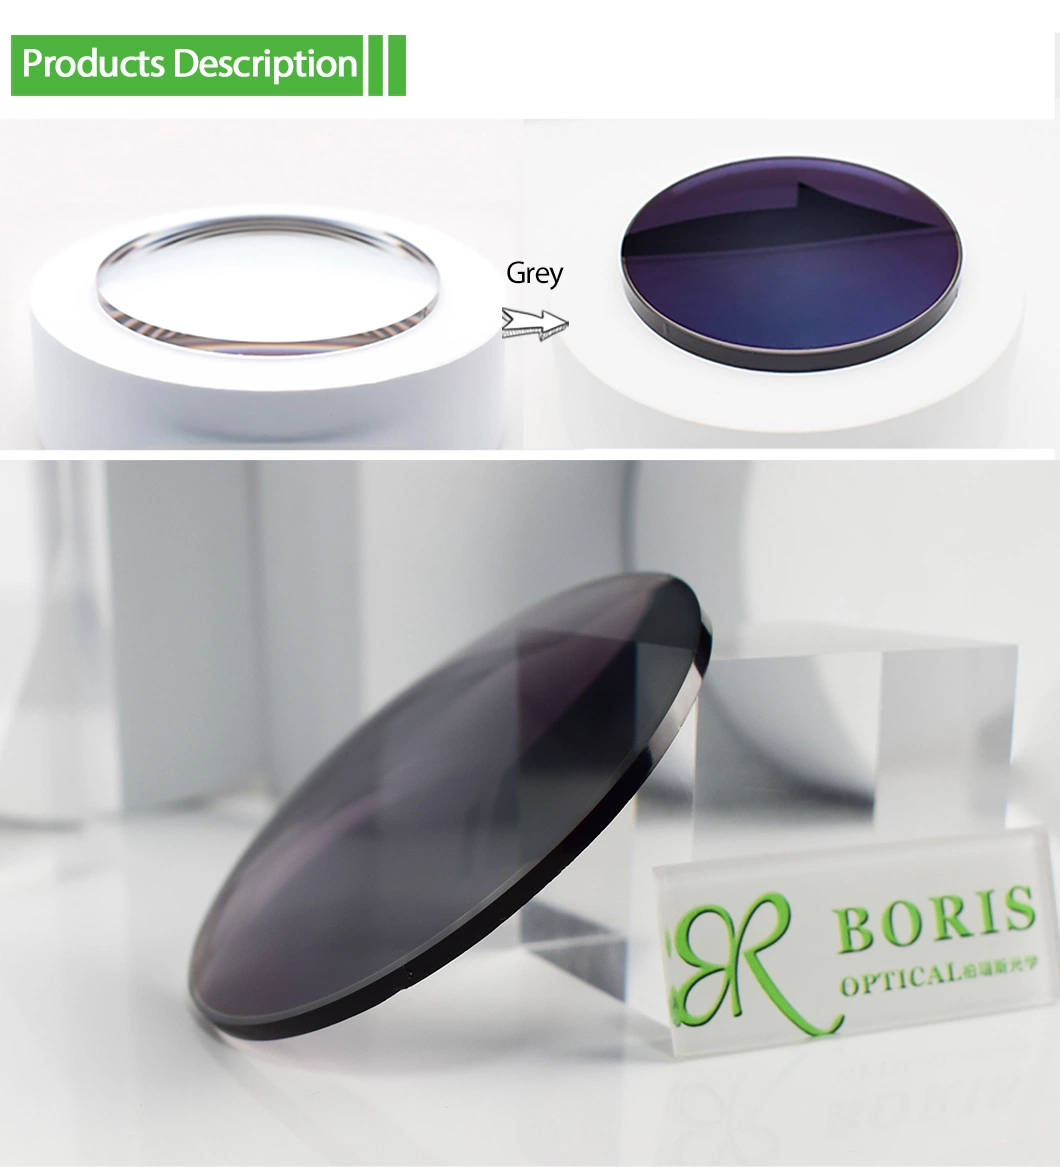 Spectacles Lens 1.71 Photochromic Grey Hmc Eyeglasses Plastic Lenses